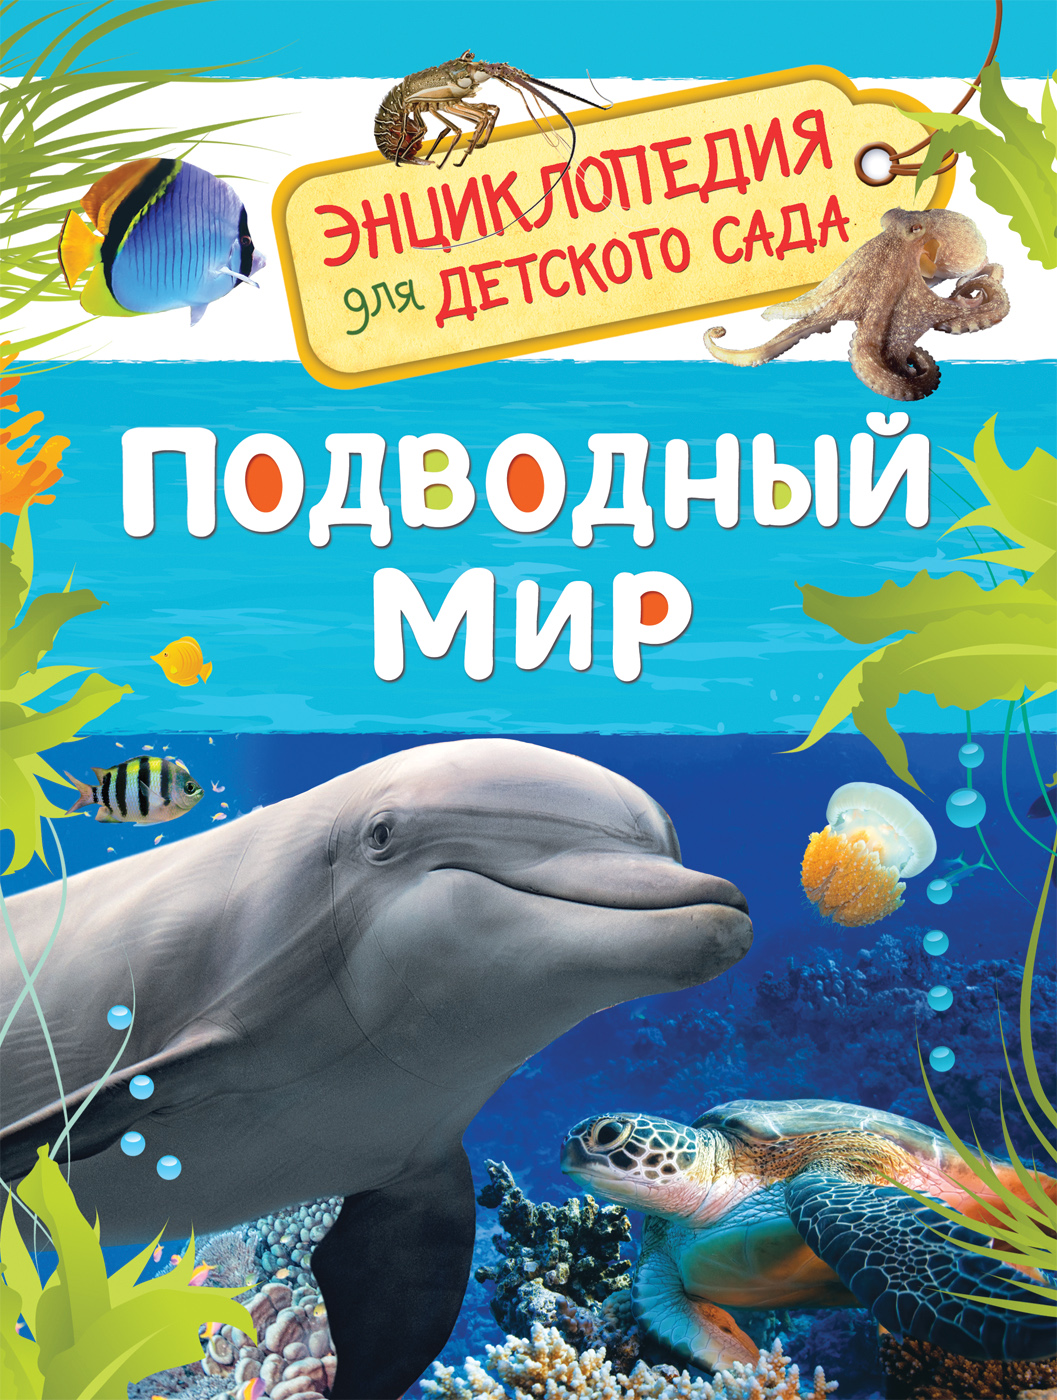 Книга 32825 "Подводный мир" Энциклопедия для детского сада Росмэн - Уфа 